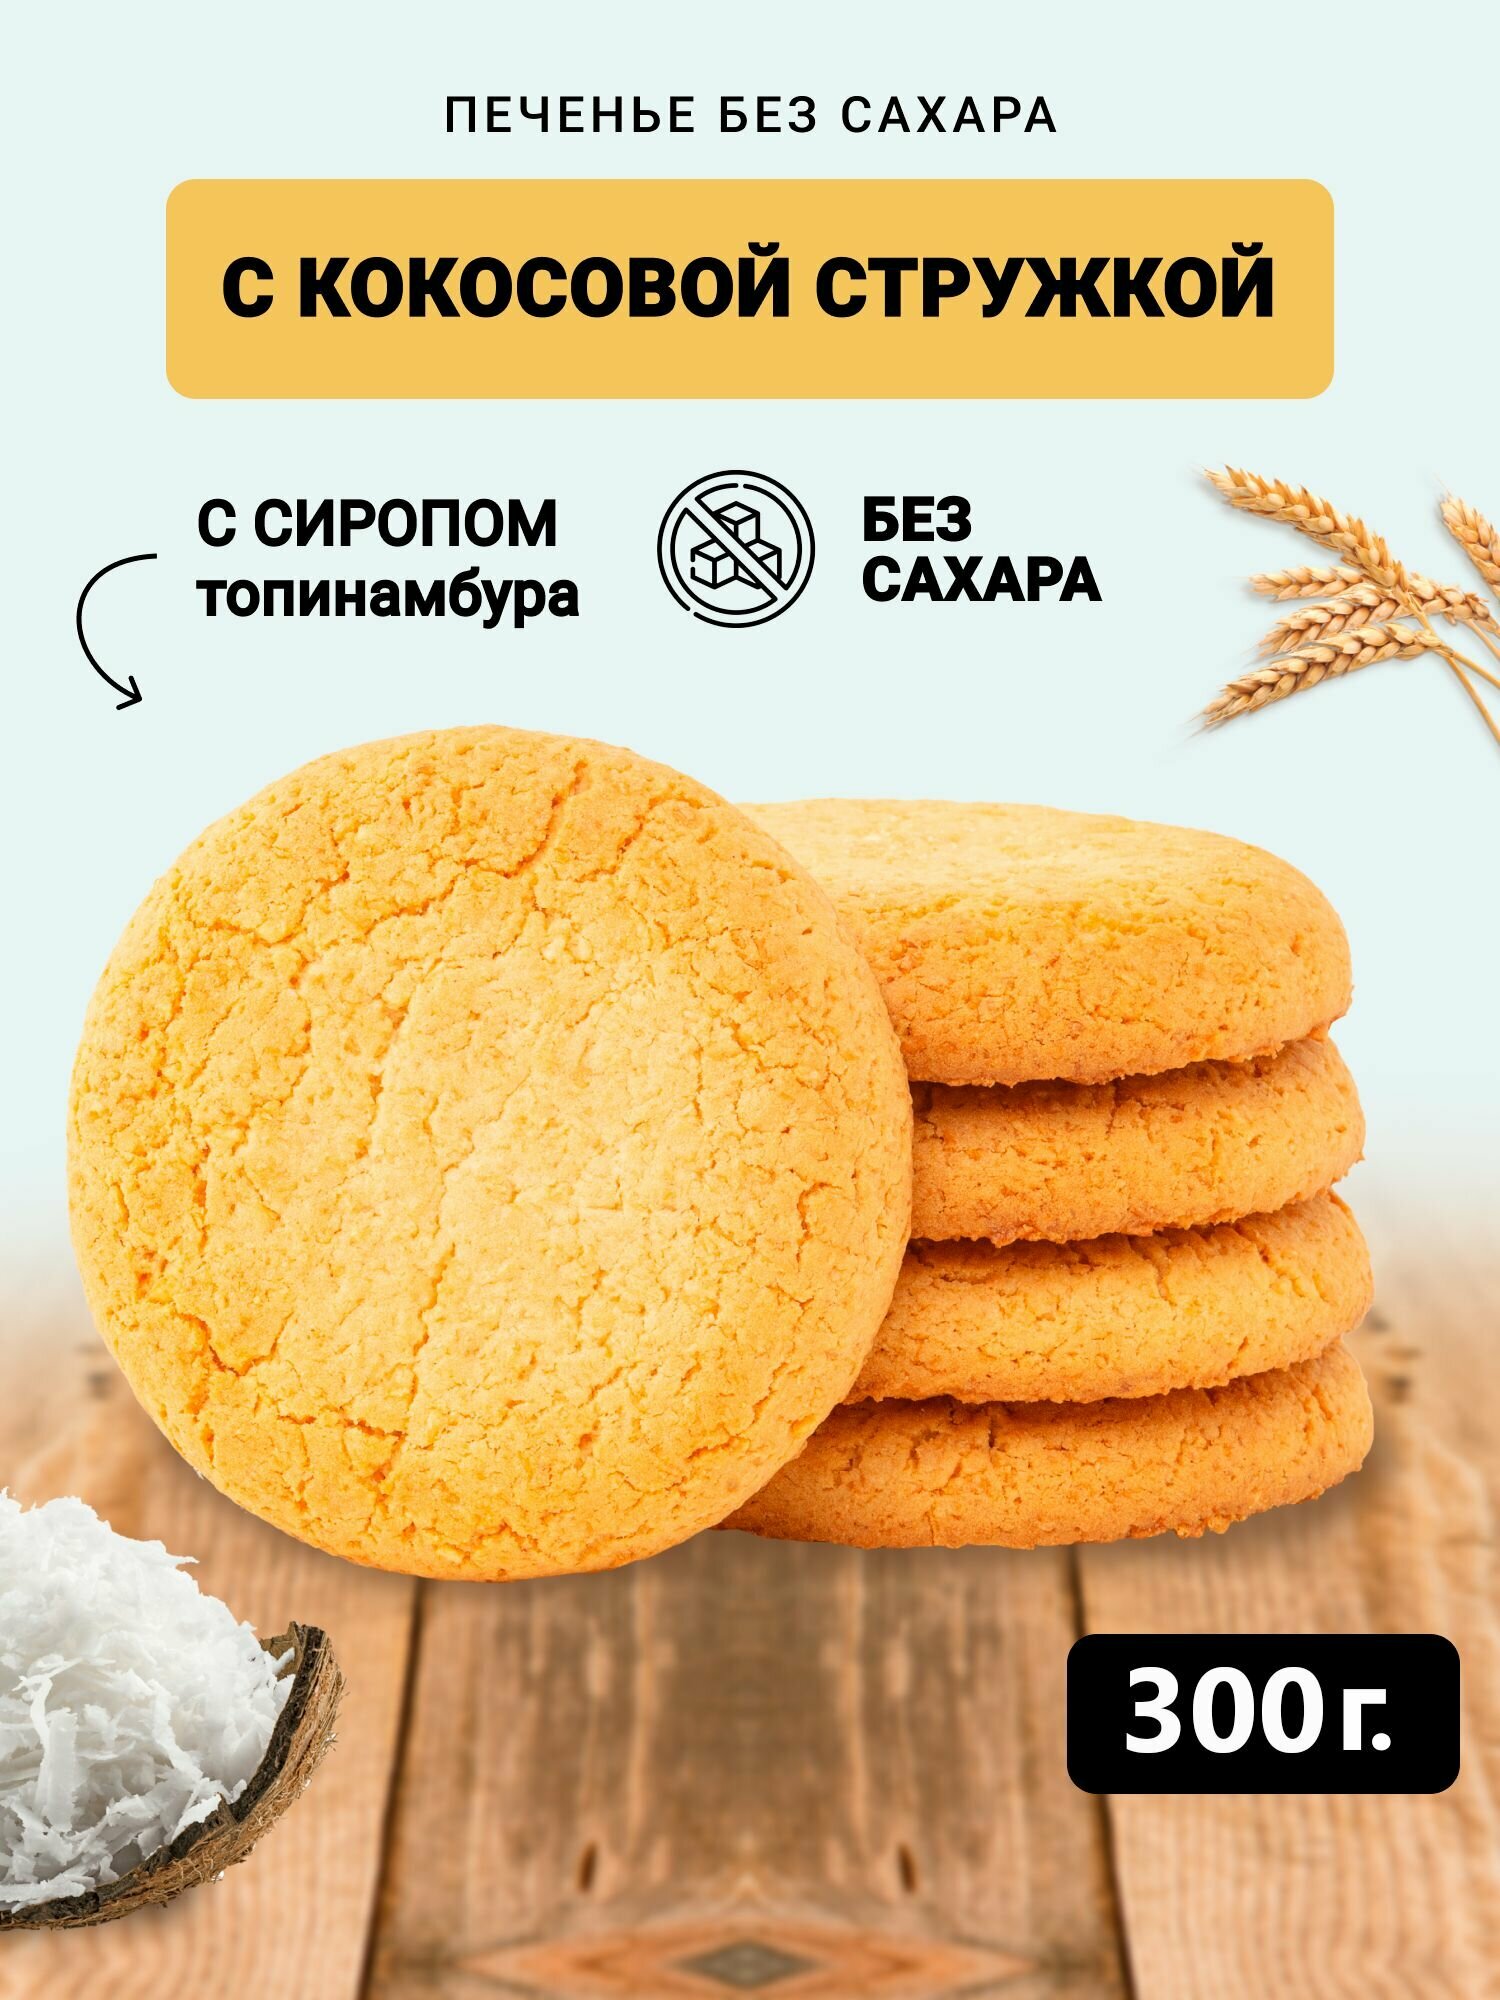 Печенье Кокосовое без сахара в коробке 300 грамм